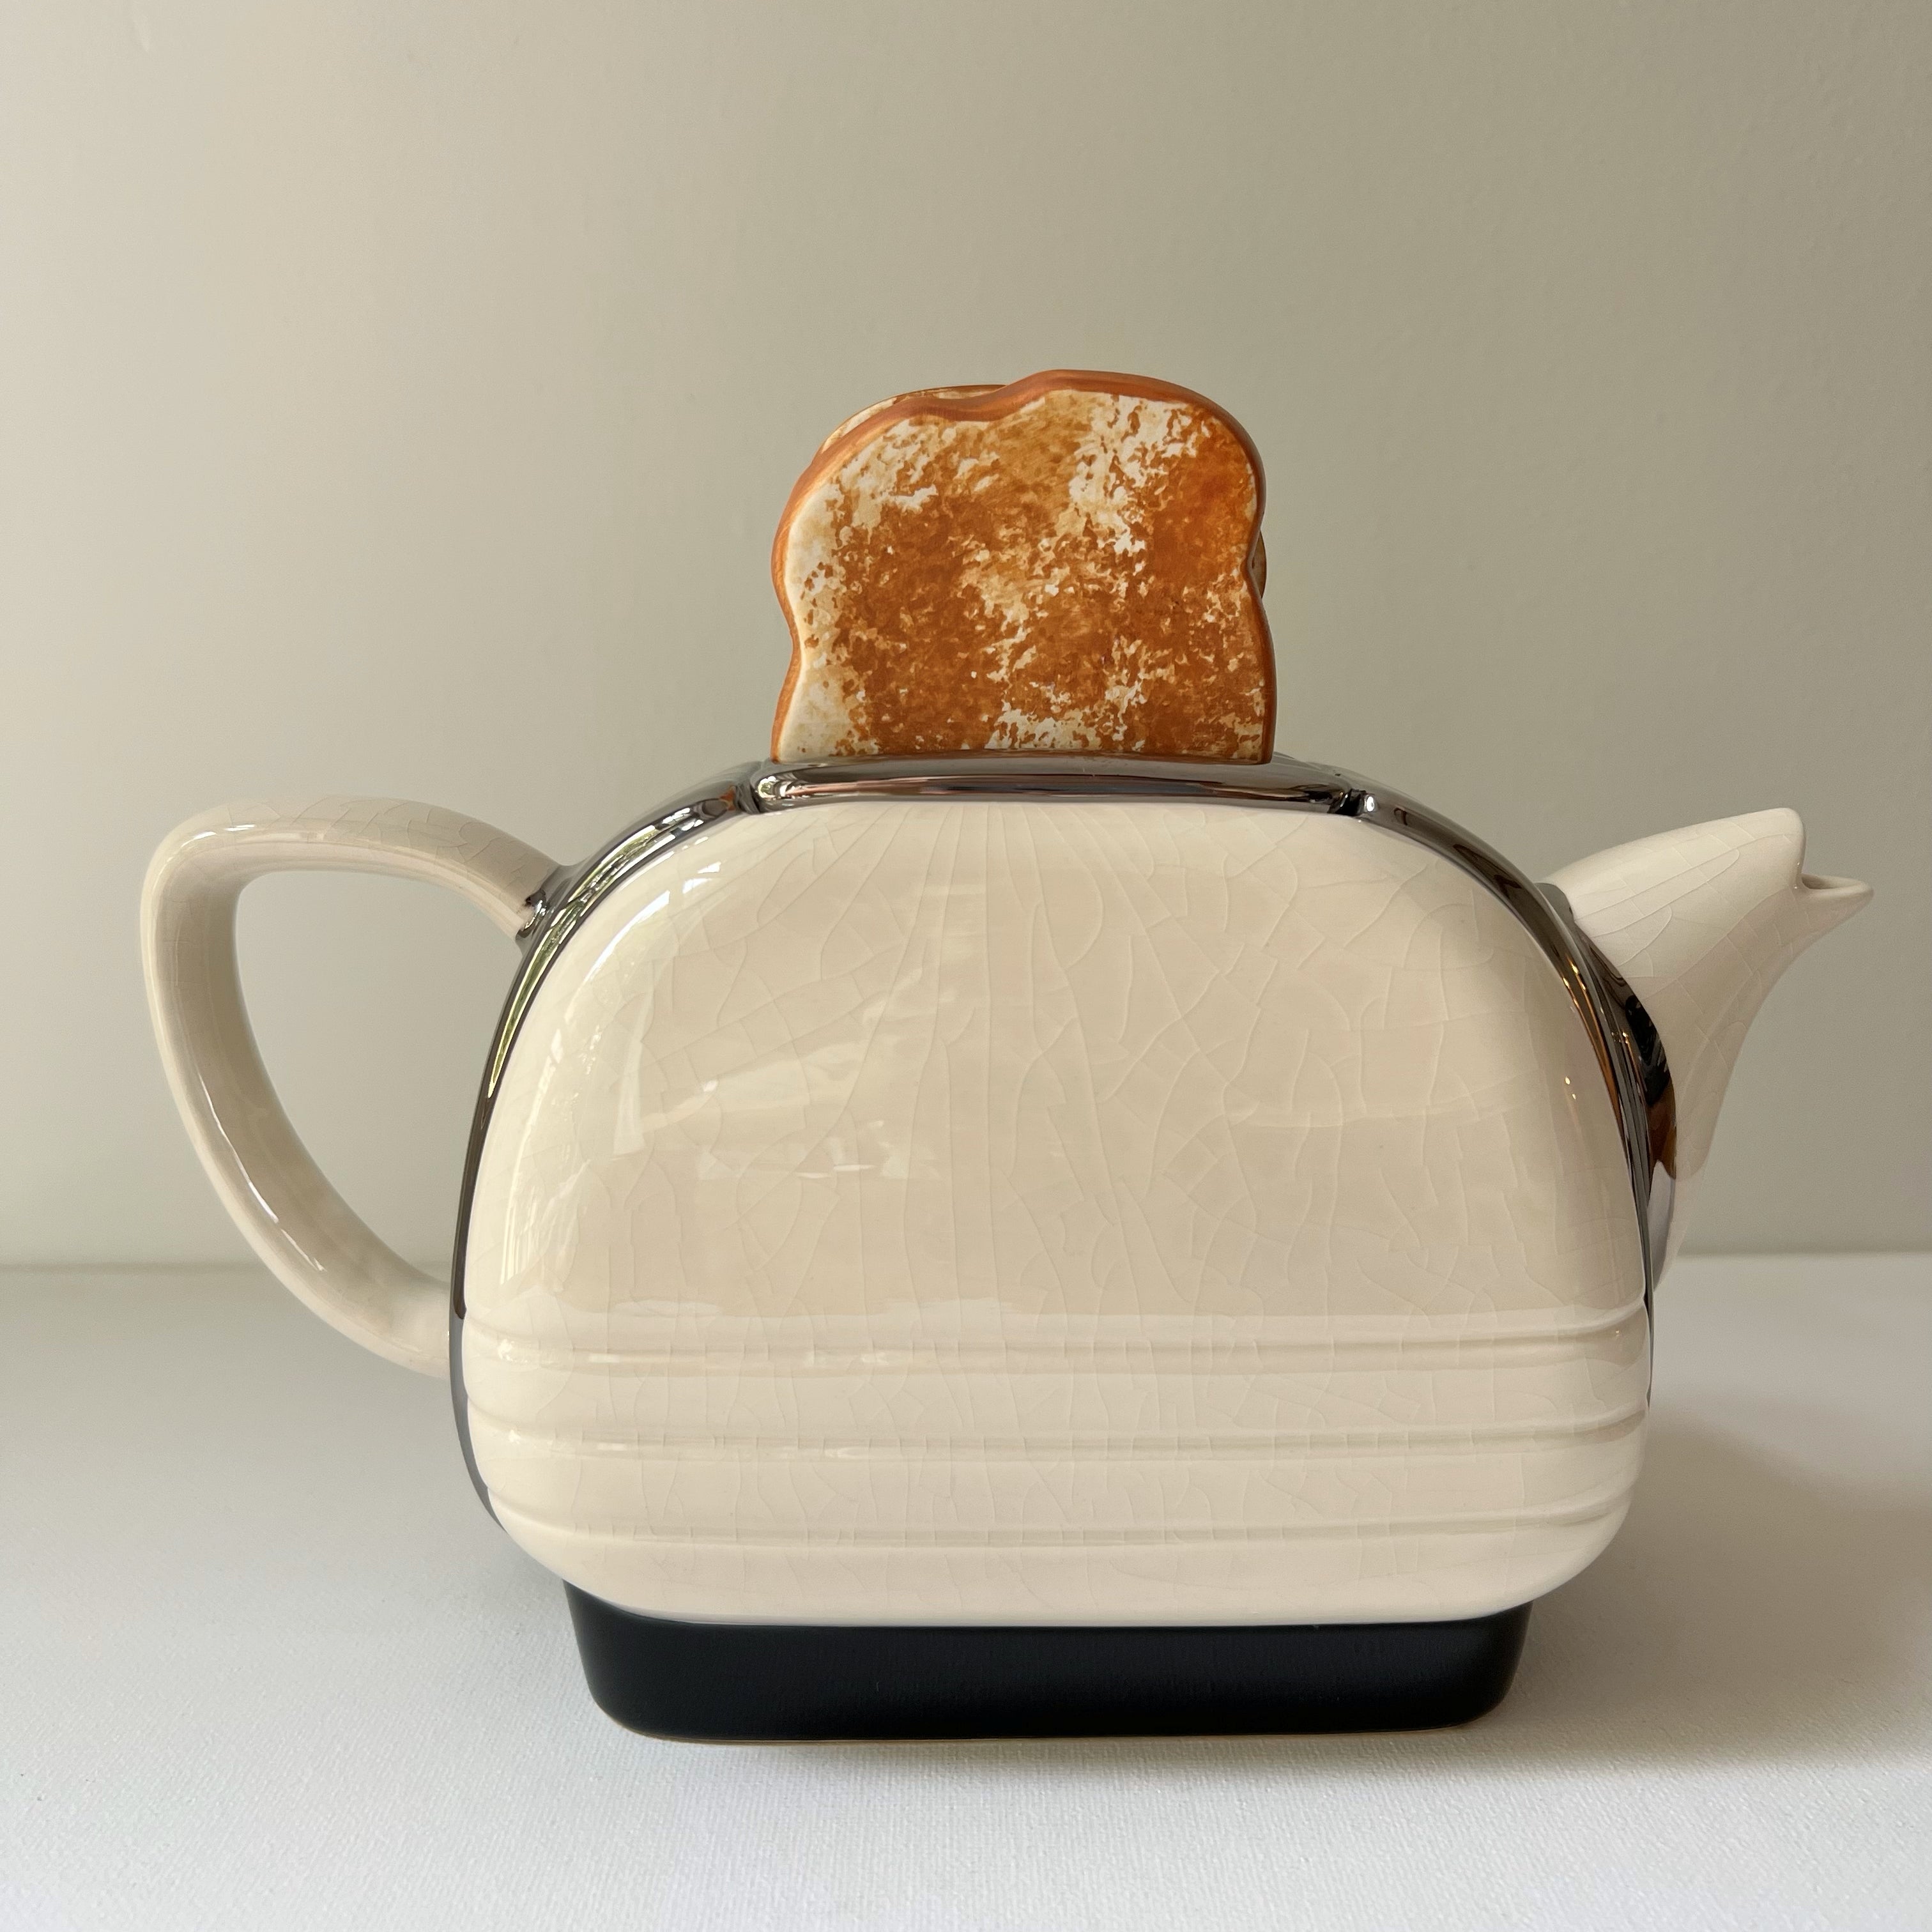 イギリス・ティーポッタリー社の陶器製ティーポット - 食器